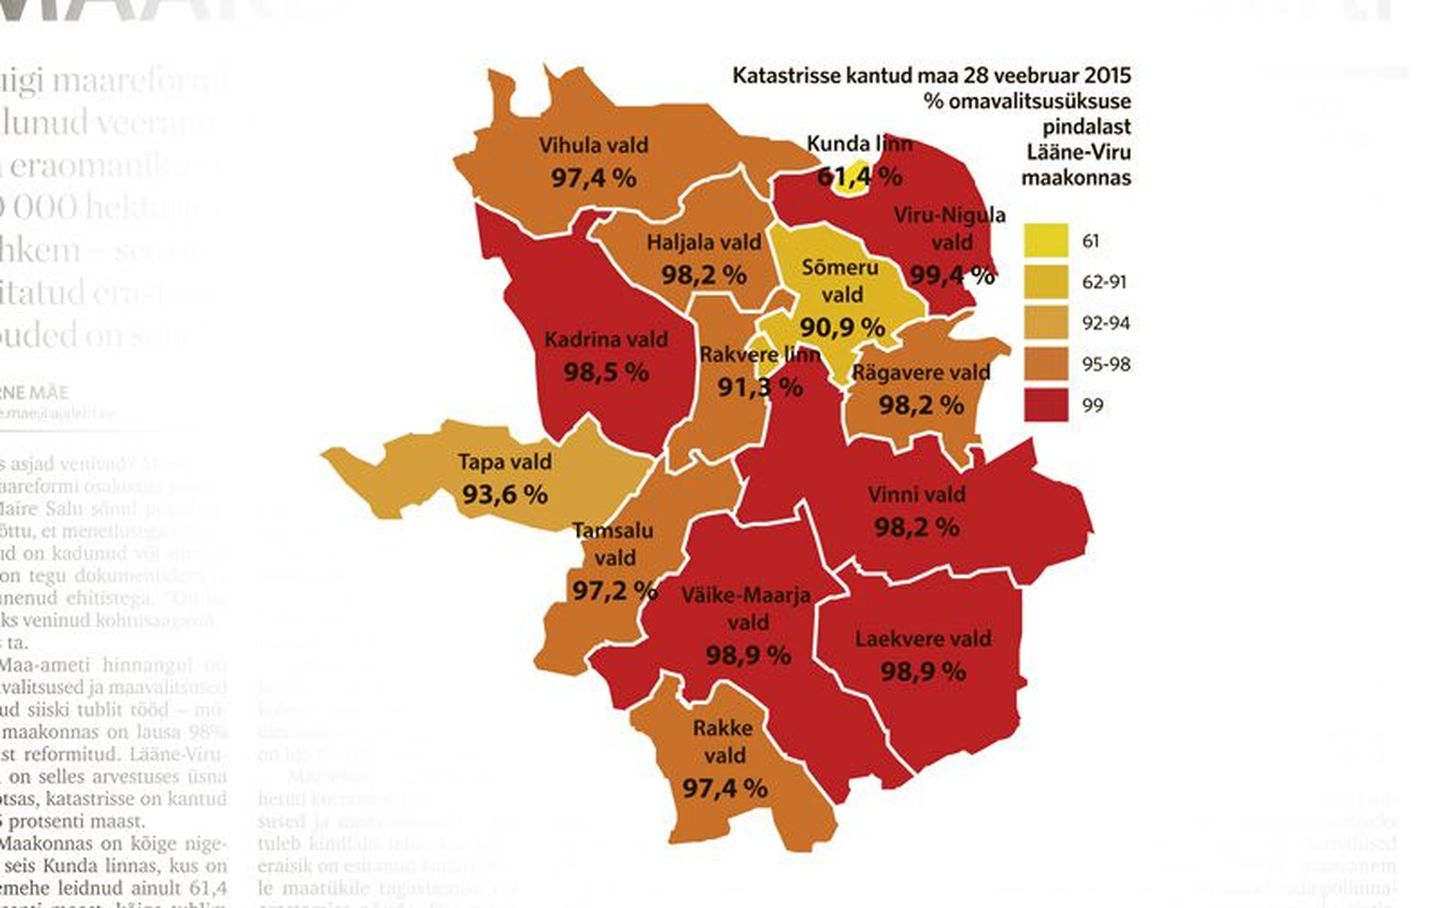 Katastrisse kantud maa 28 veebruar 2015
(% omavalitsusüksuse pindalast Lääne-Viru
maakonnas)